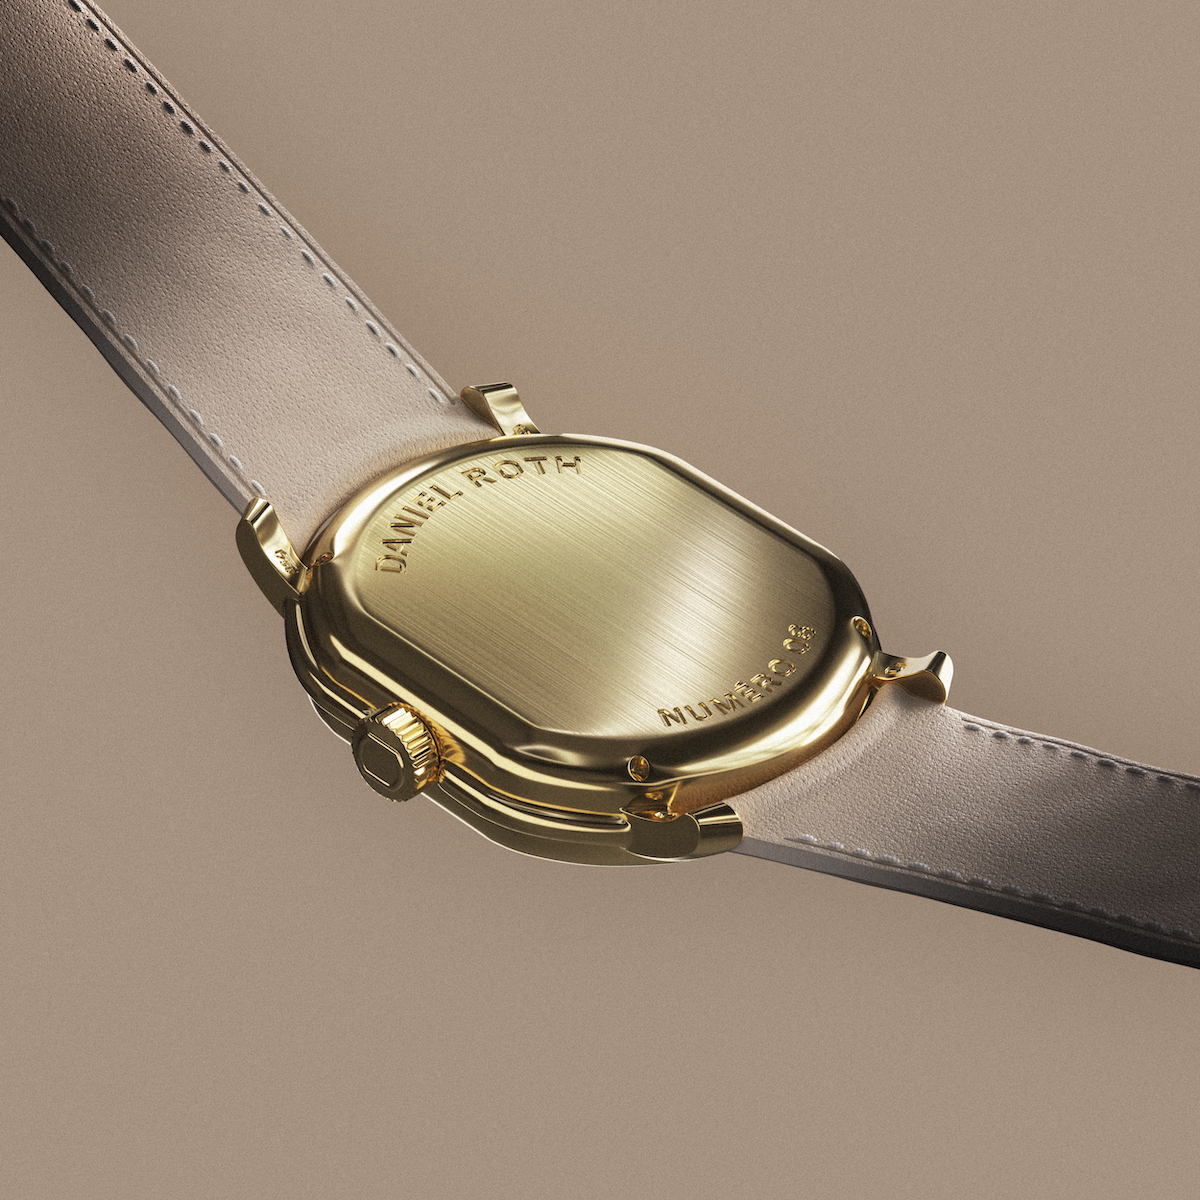 Louis Vuitton unveils the Daniel Roth Tourbillon Souscription timepiece